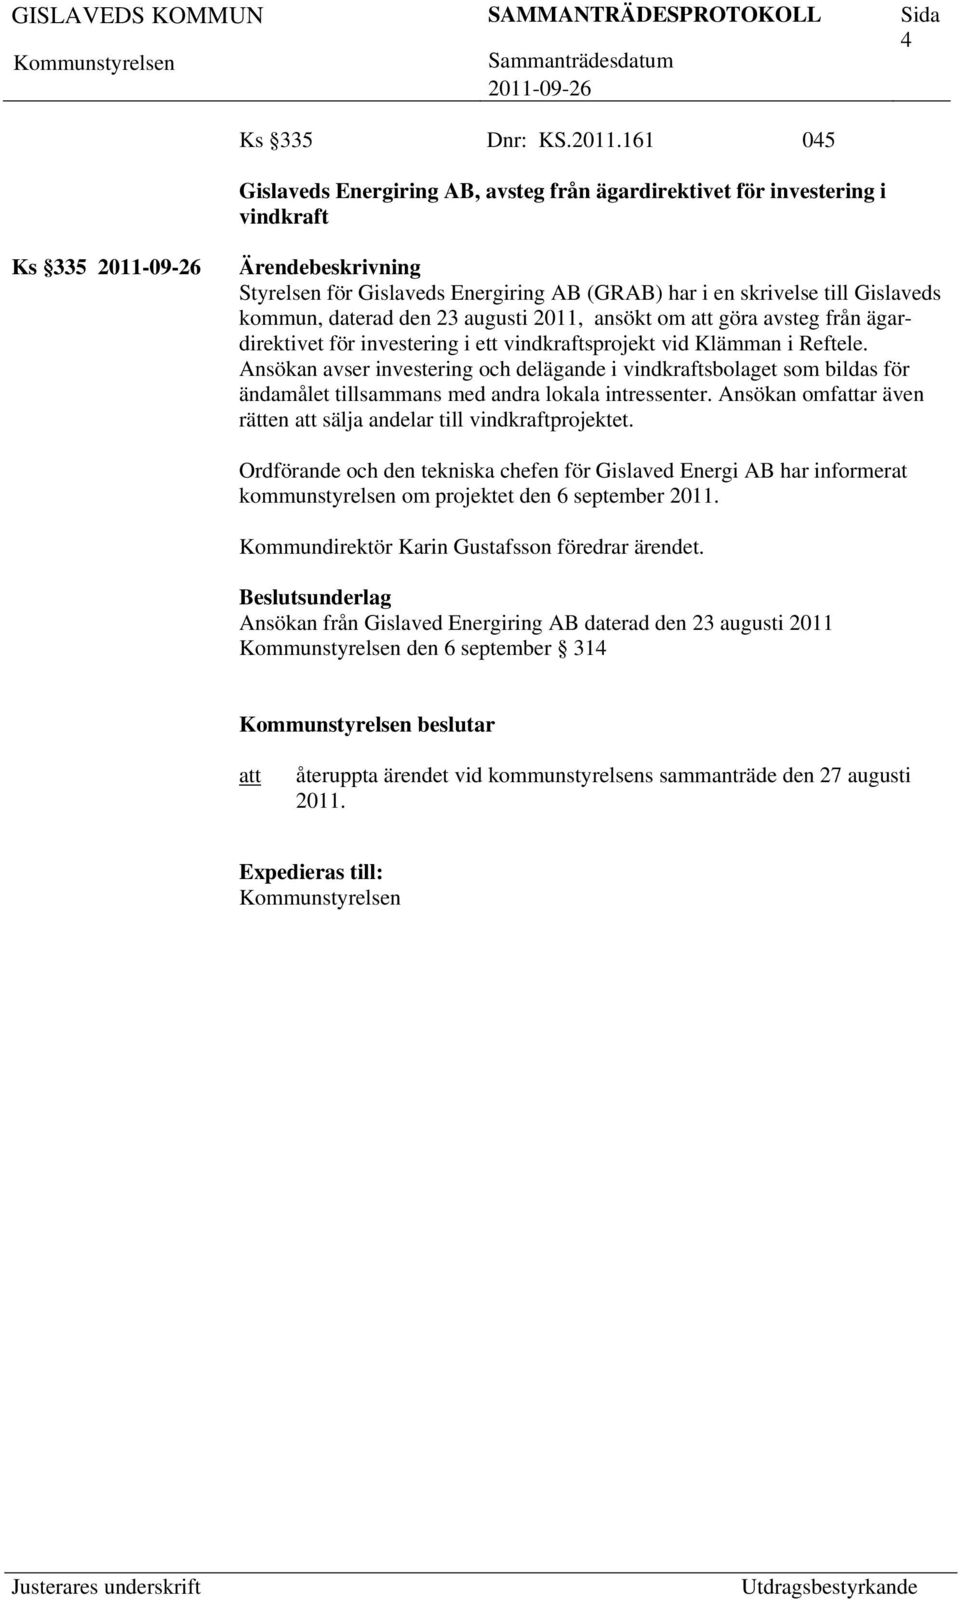 augusti 2011, ansökt om göra avsteg från ägardirektivet för investering i ett vindkraftsprojekt vid Klämman i Reftele.